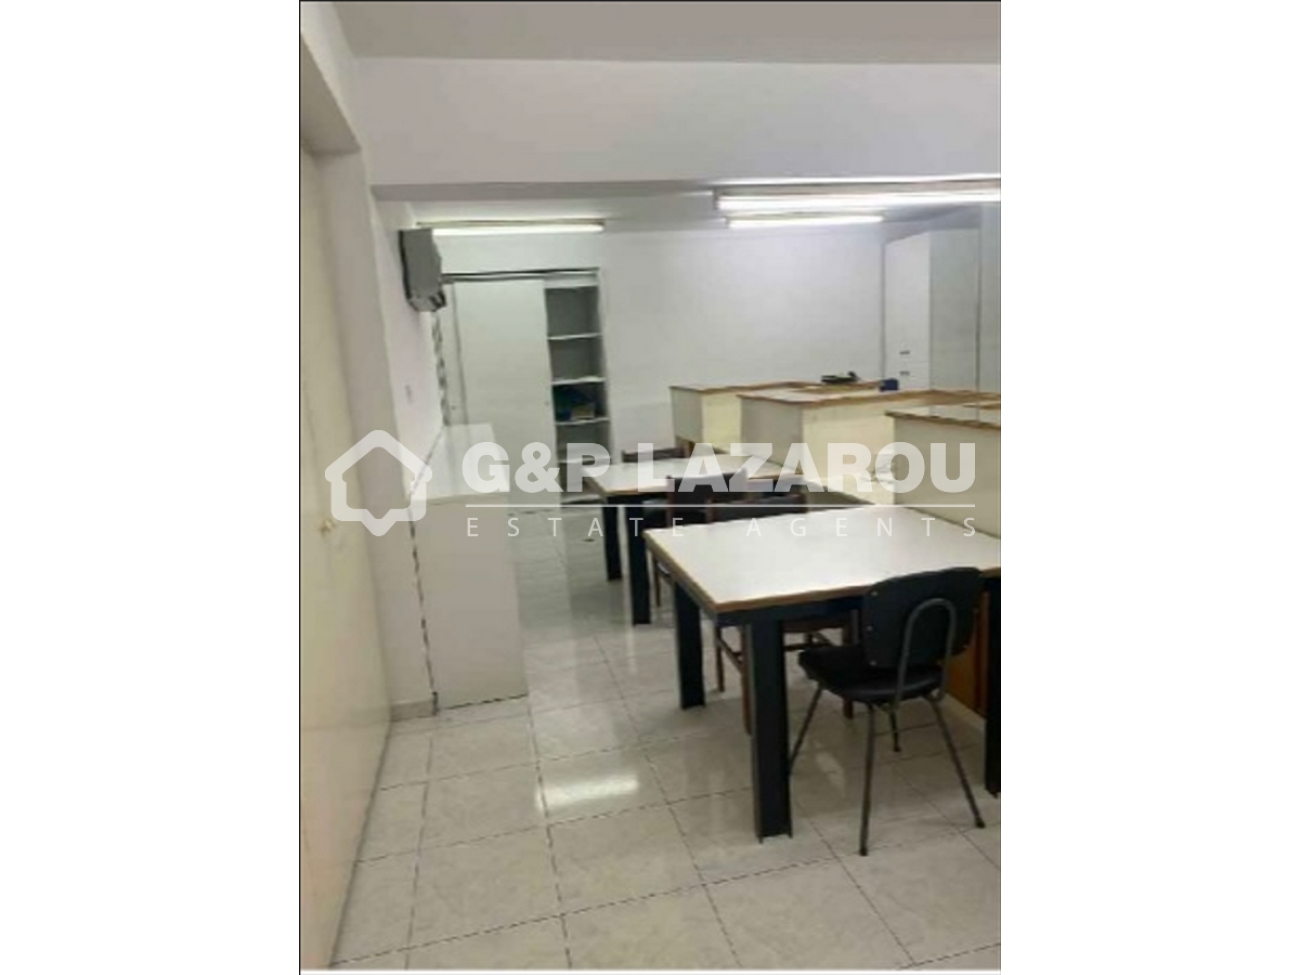 241m² Office for Rent in Larnaca – Chrysopolitissa